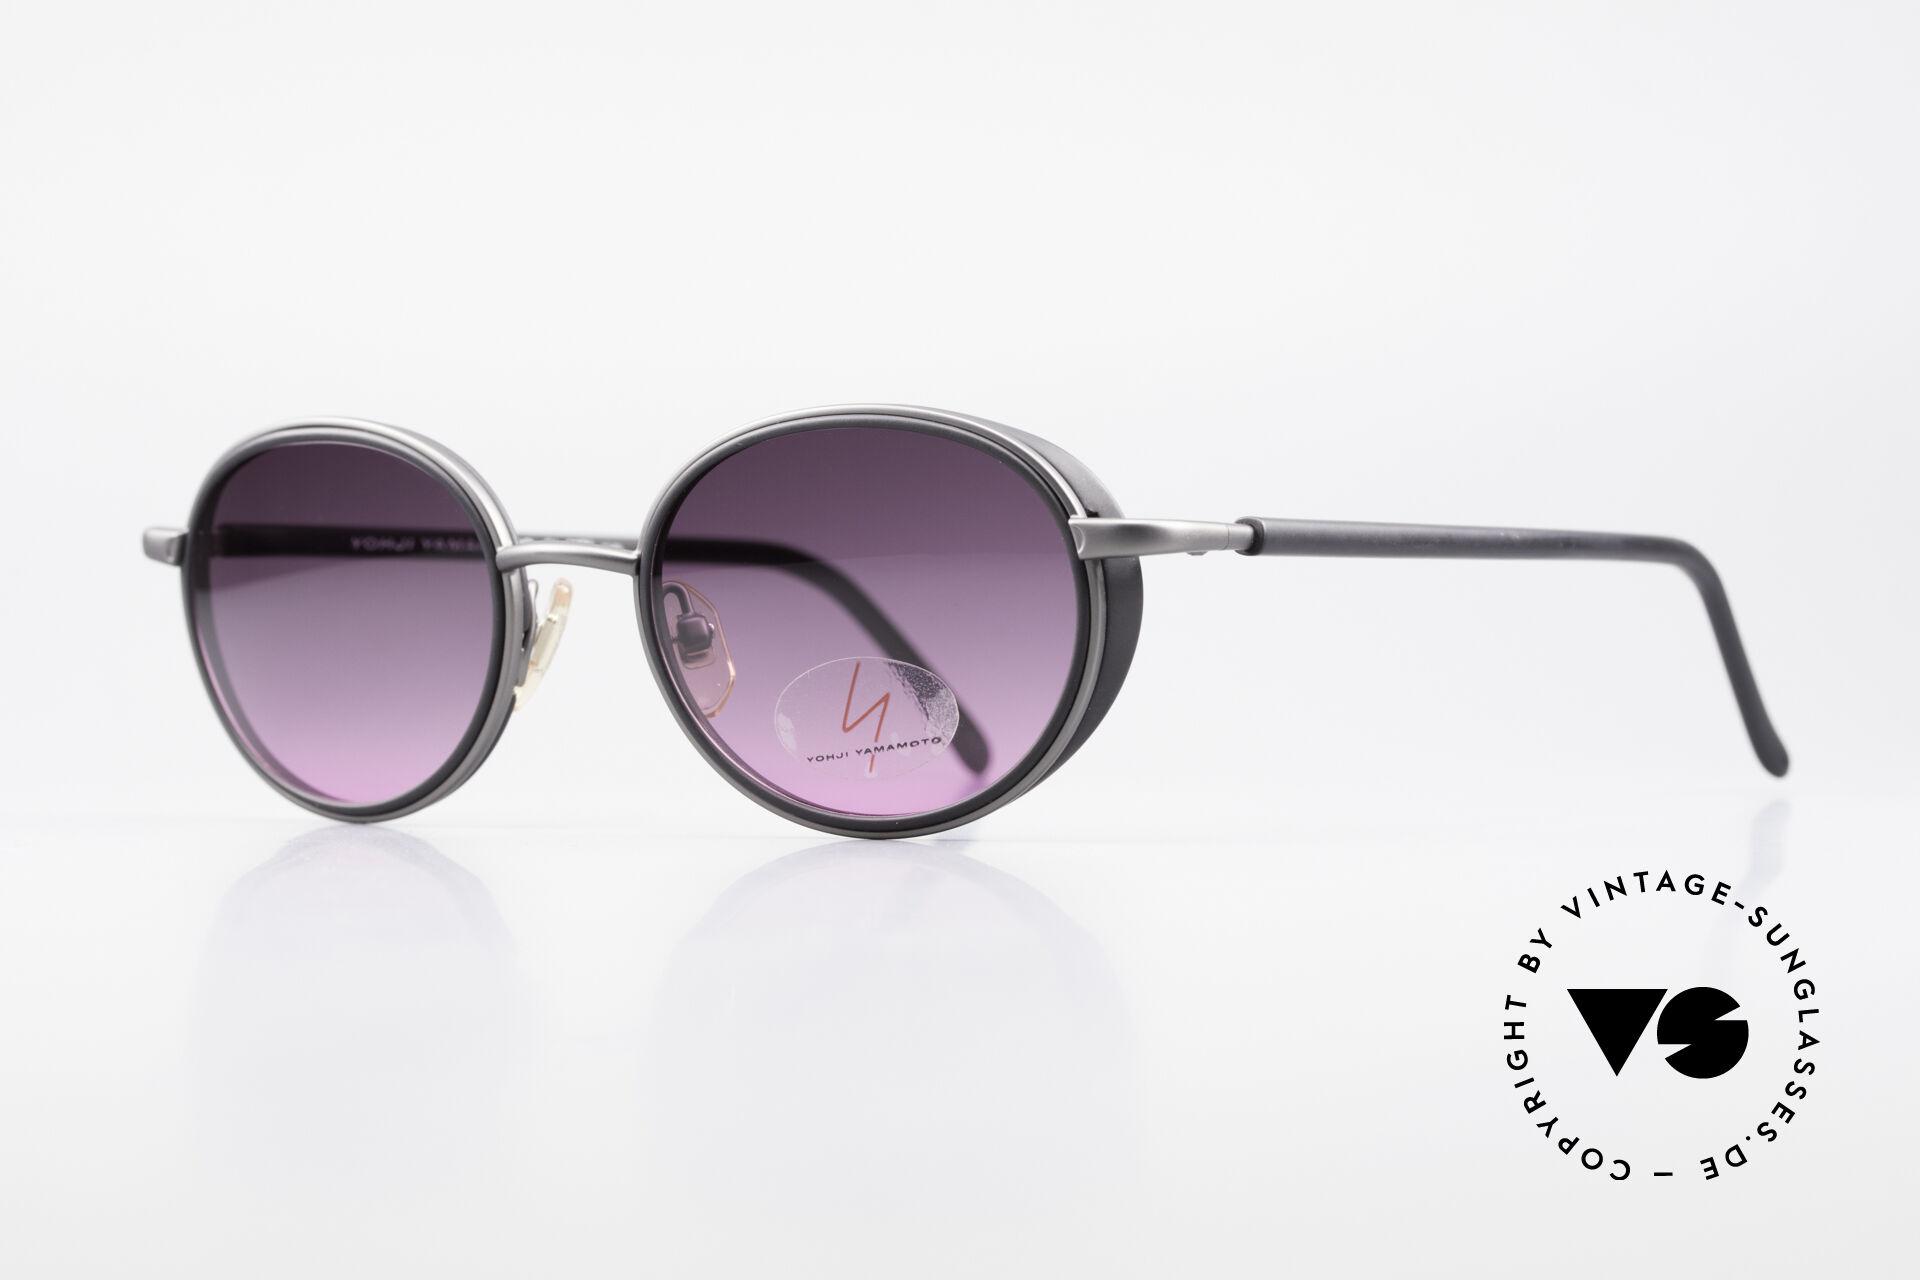 Sunglasses Yohji Yamamoto 51-6201 Side Shields Sunglasses 90's